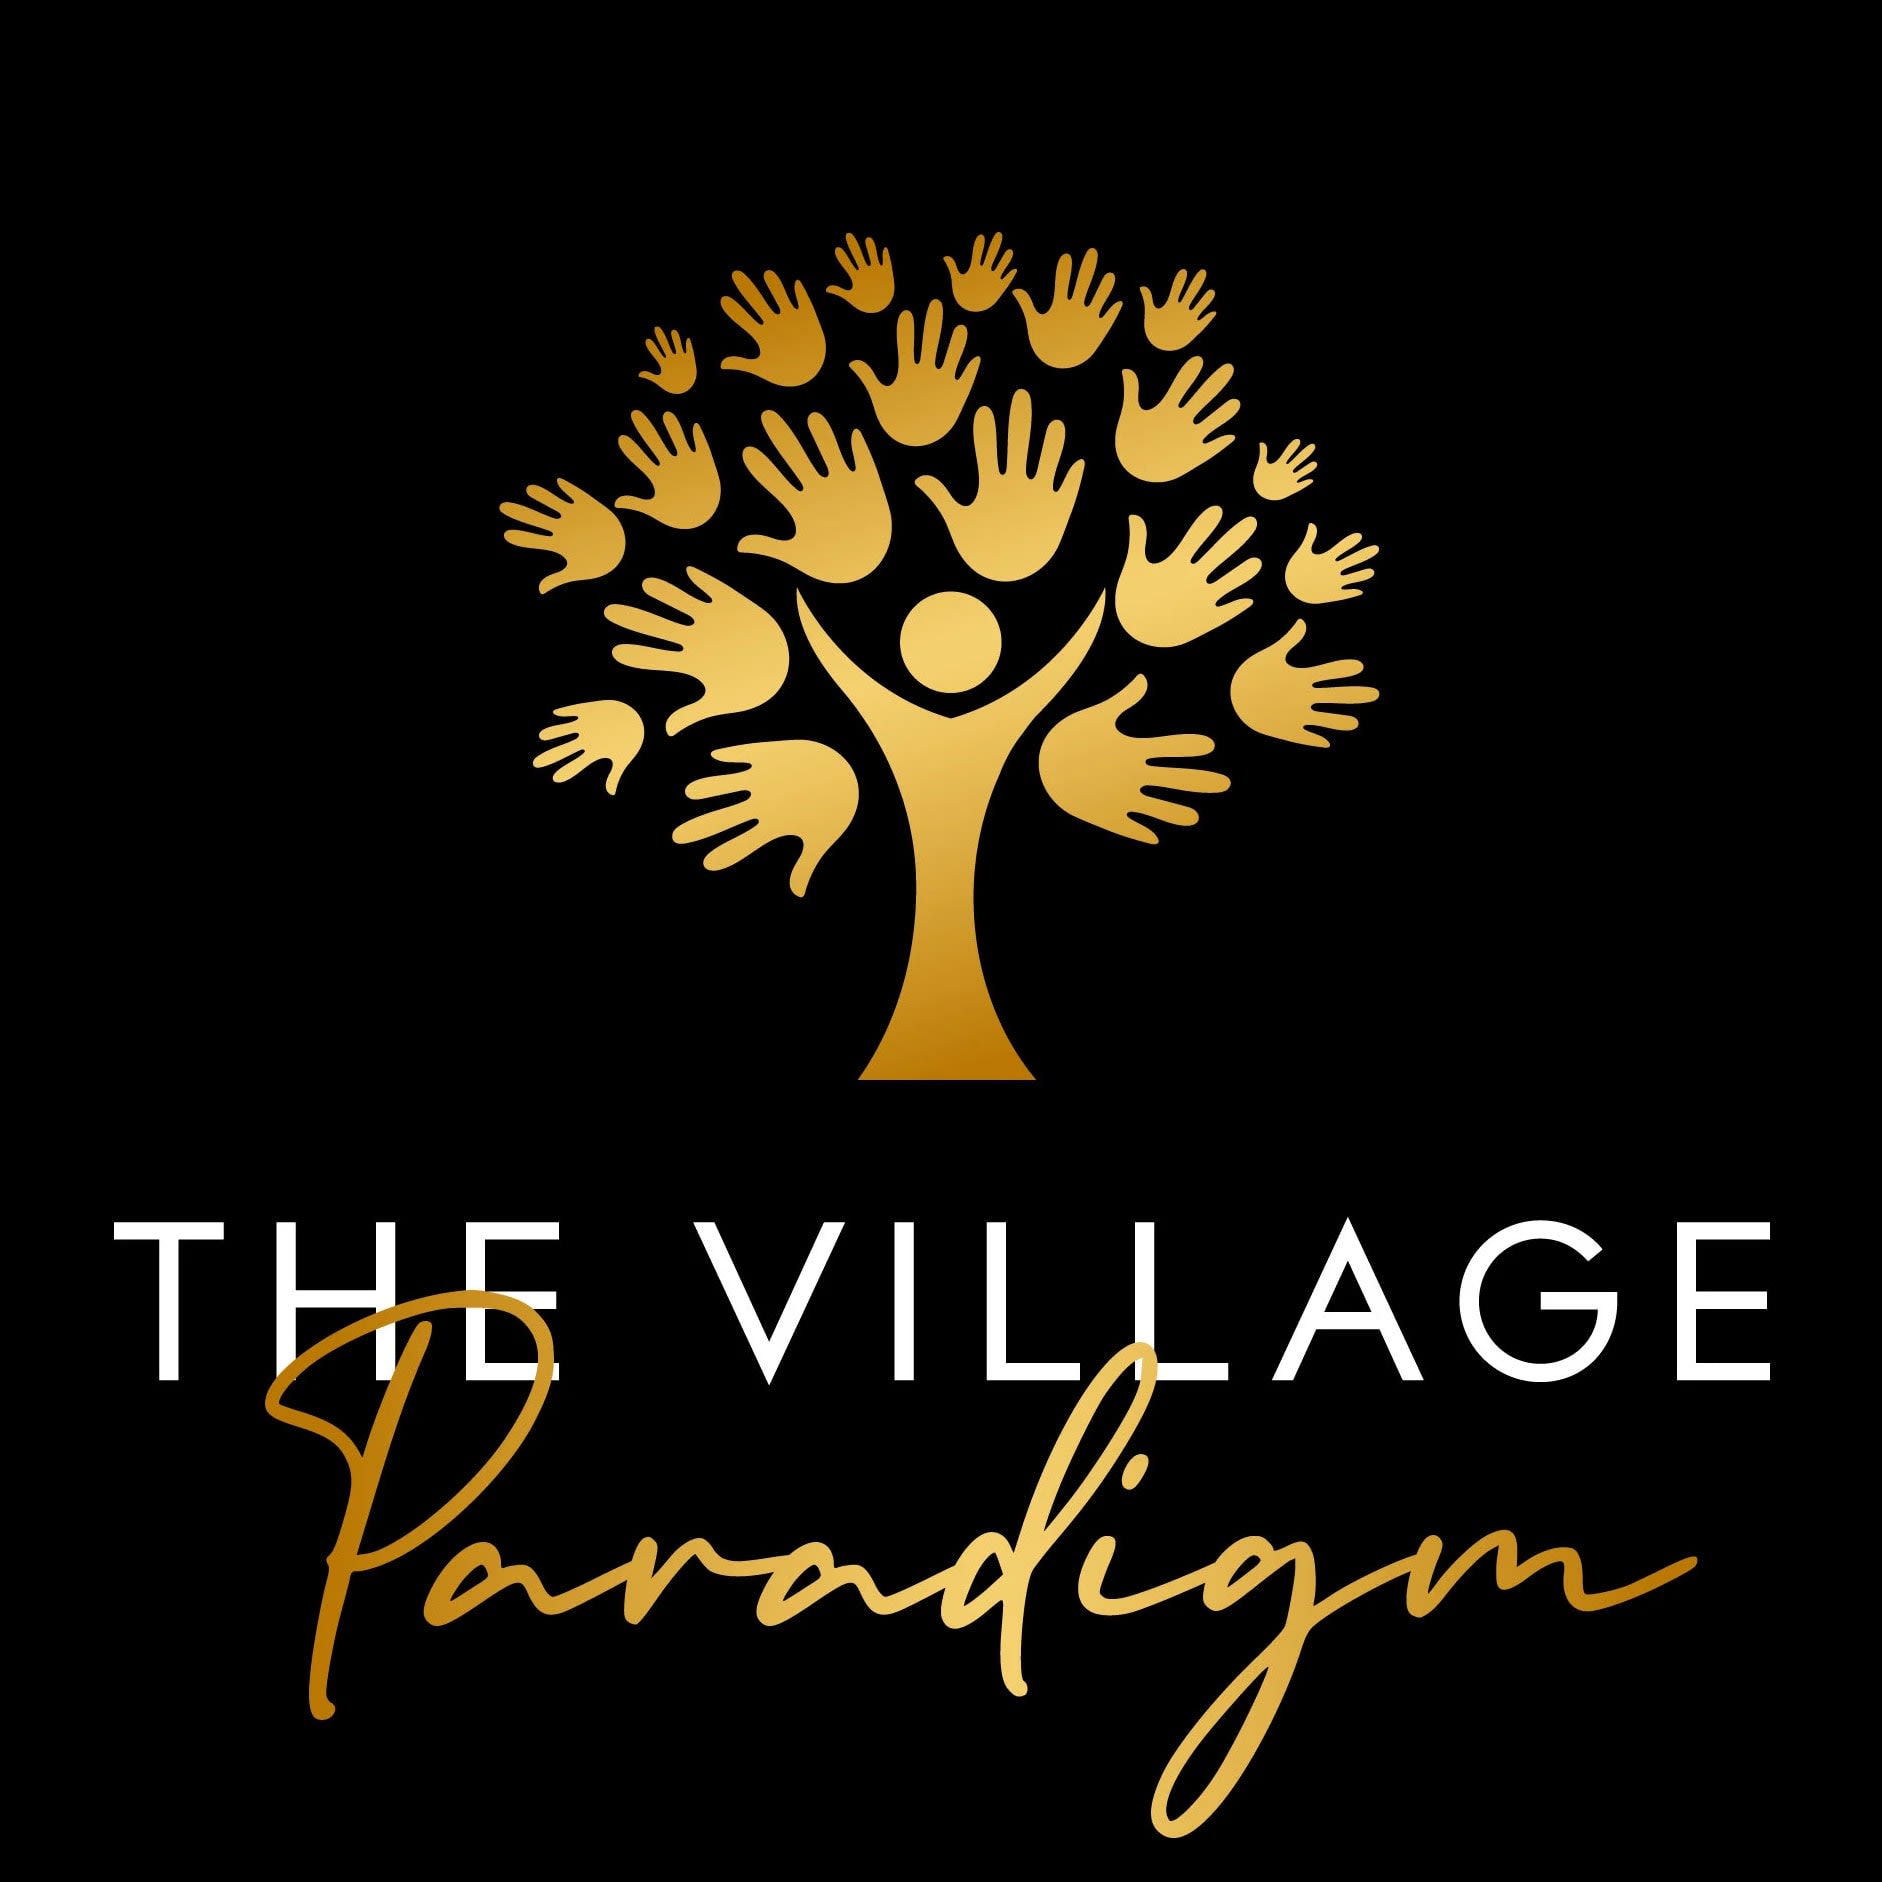 The Village Paradigm